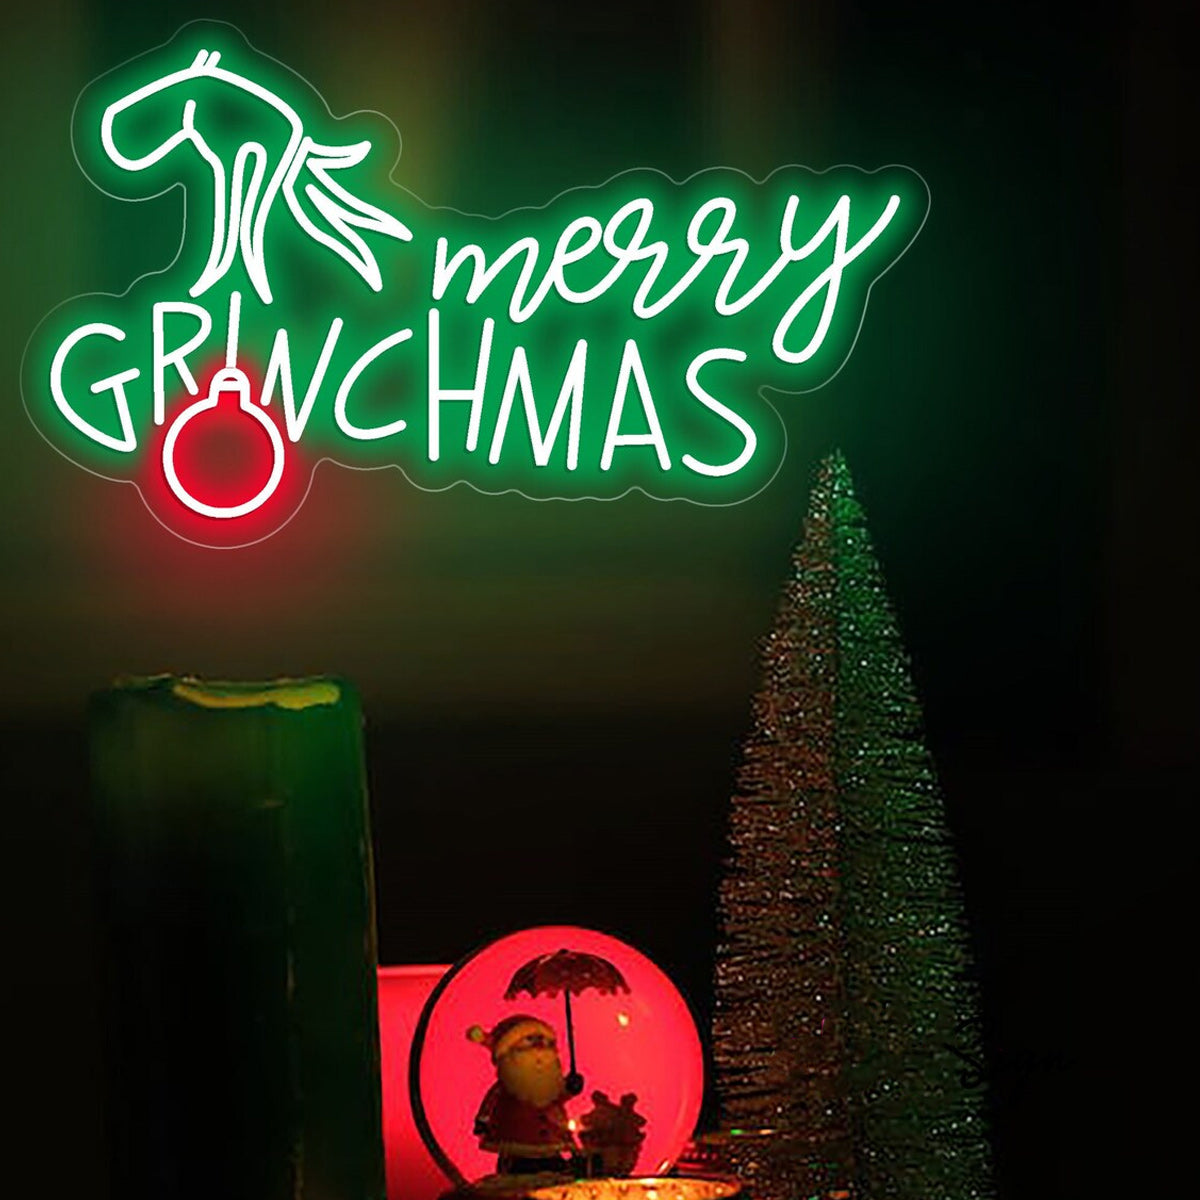 NEONIP-Insegna a LED con insegna al neon Merry Grinchmas fatta a mano al 100%.